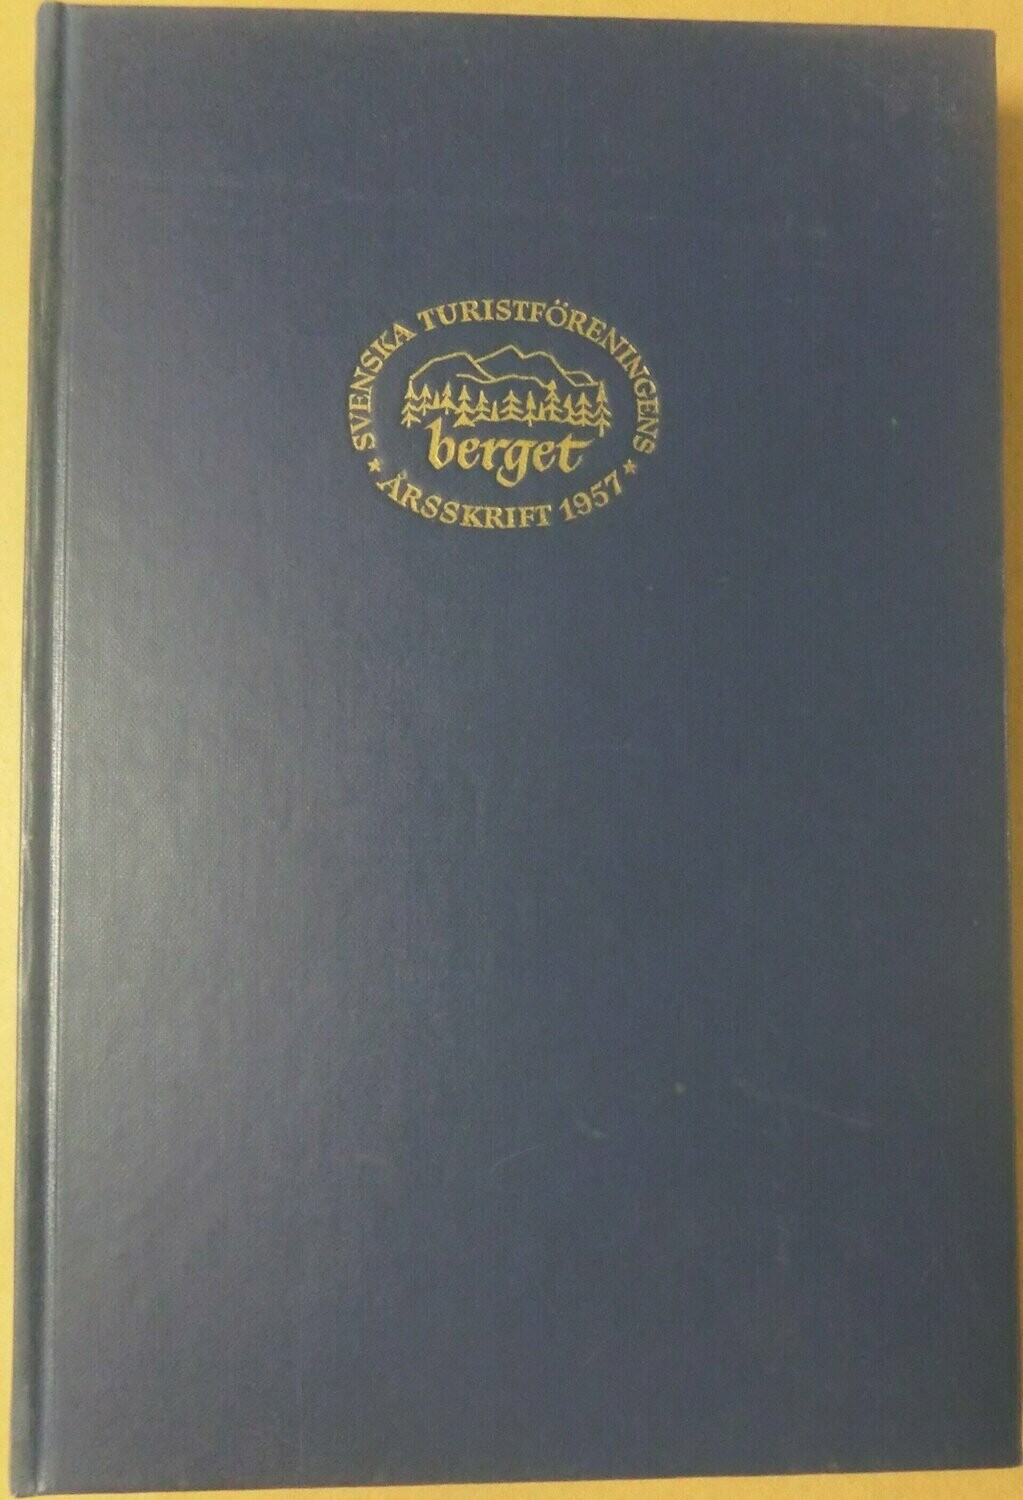 STF årsskrift 1957 - Berget